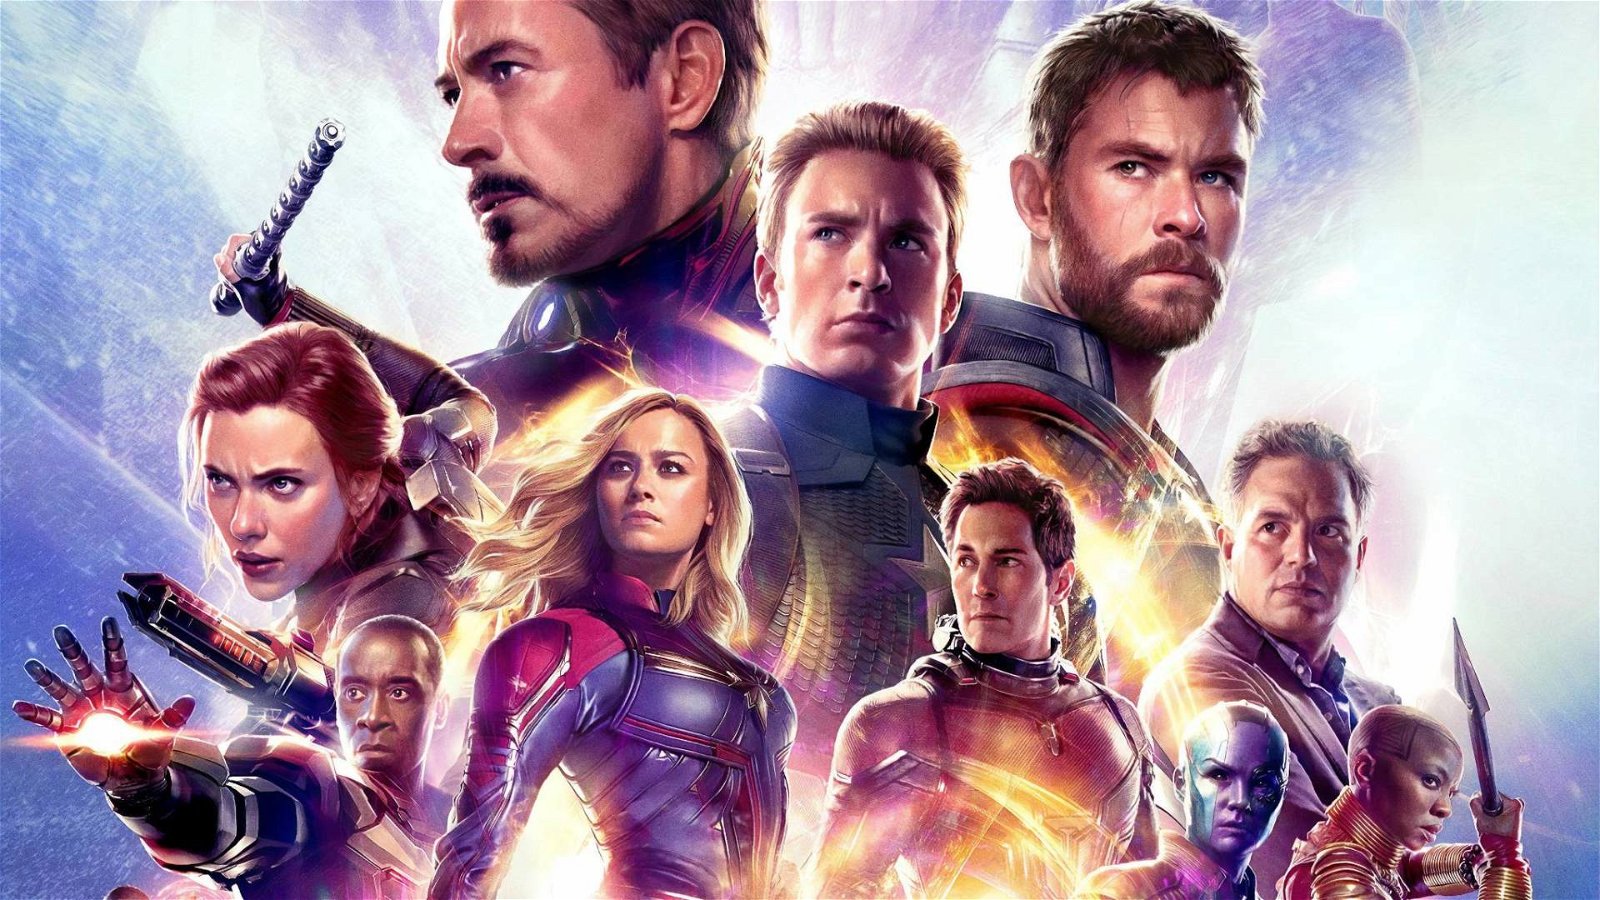 Immagine di Avengers: Endgame, membro Academy contrario alla candidatura agli Oscar